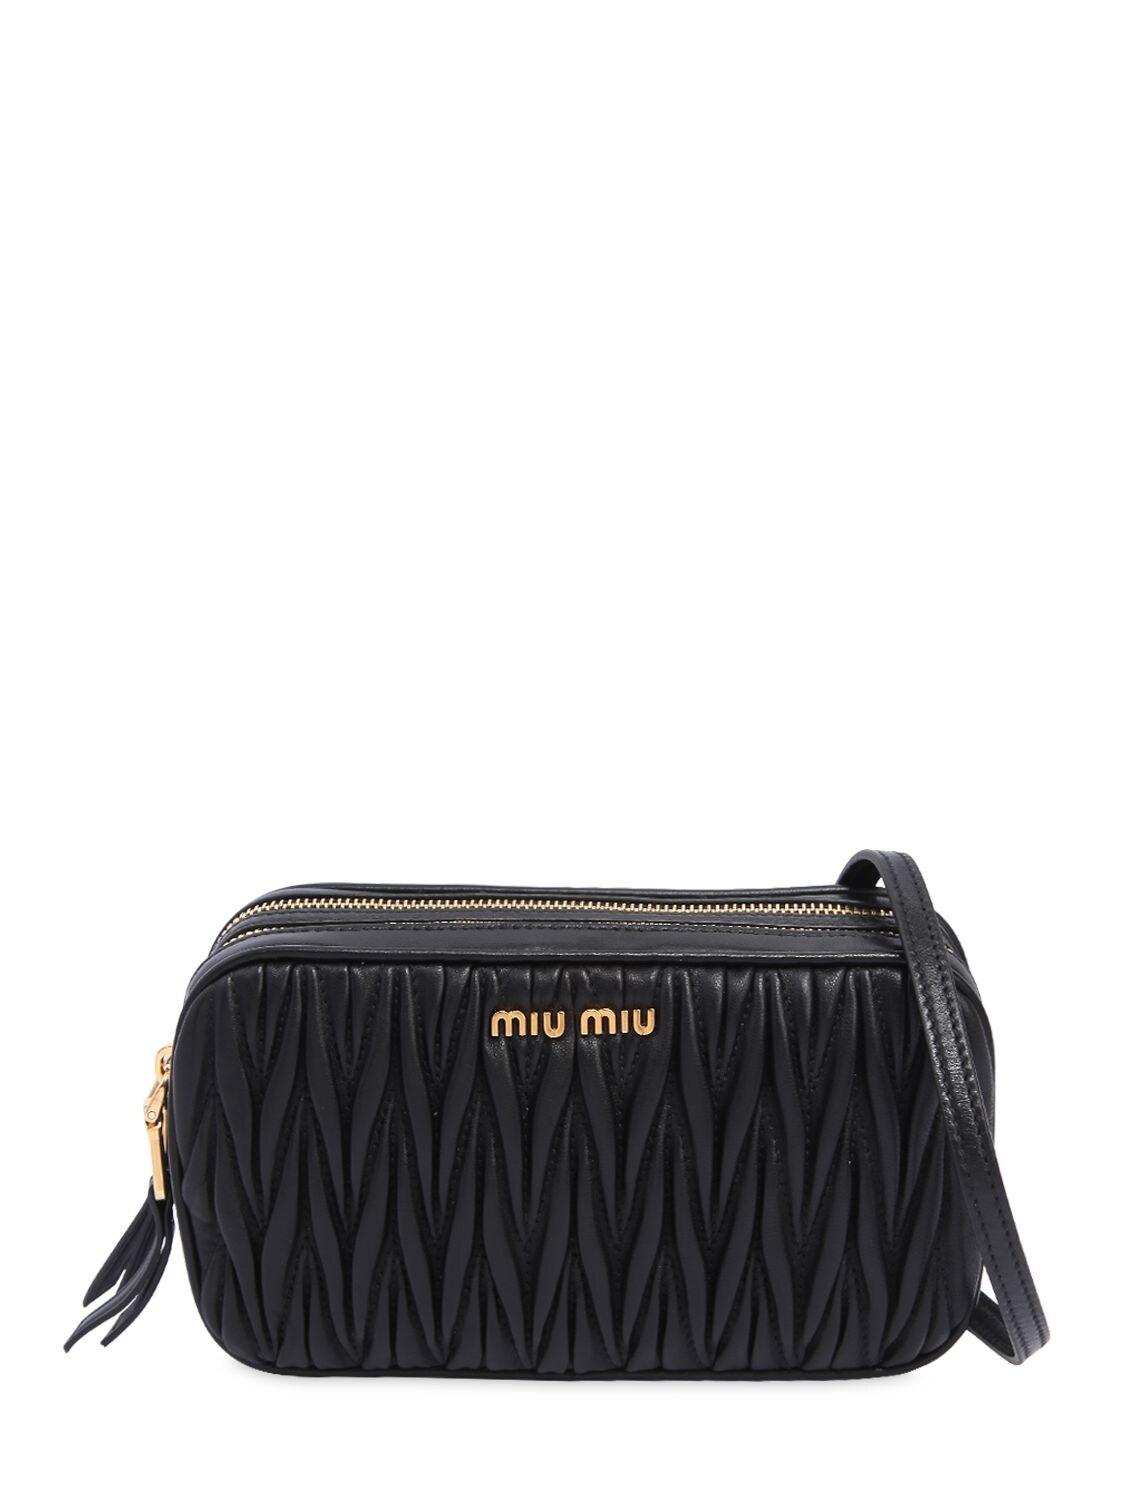 Miu Miu Quilted Leather Camera Bag in Black | Lyst